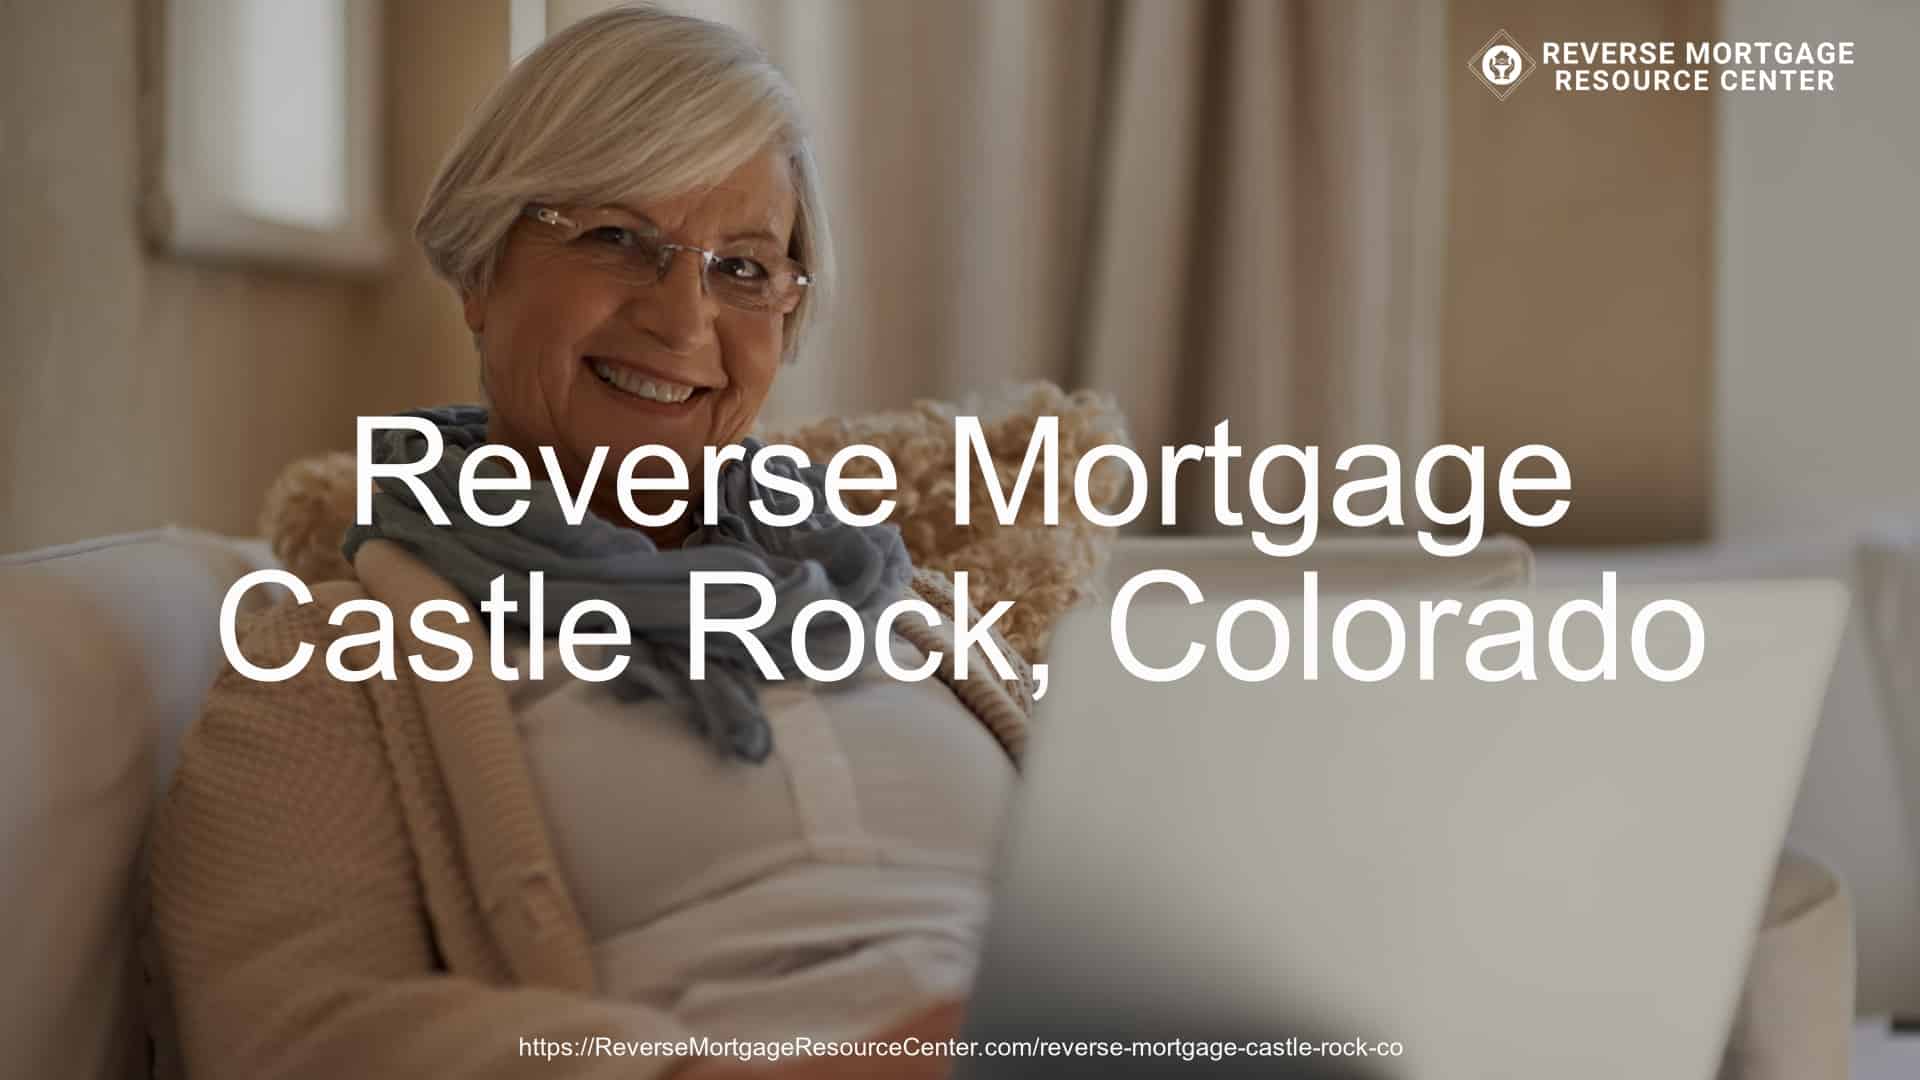 Reverse Mortgage Loans in Castle Rock Colorado